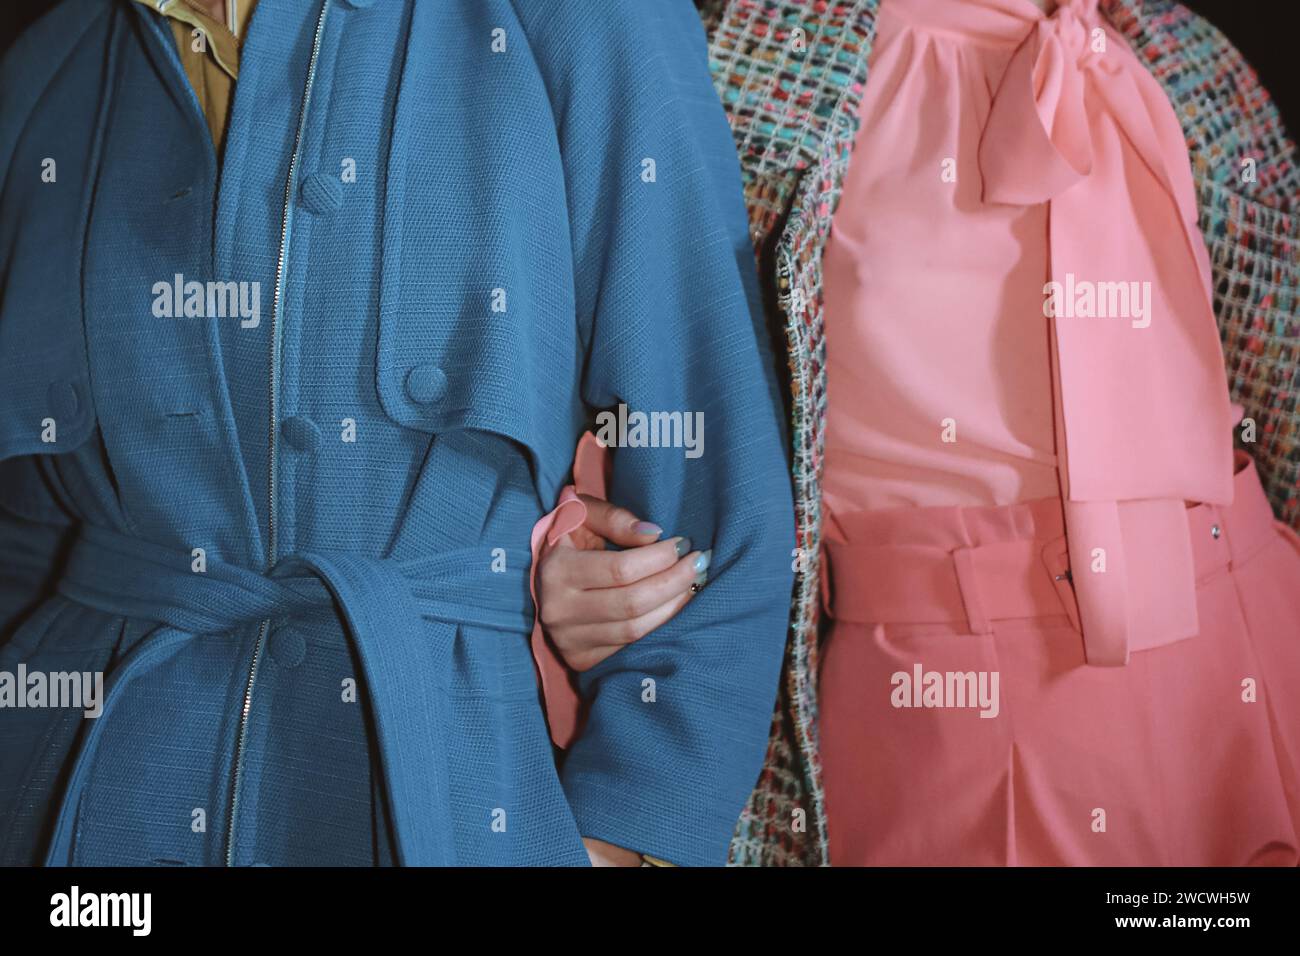 Dettagli alla moda del cappotto blu e della blusa rosa. Dettagli lifestyle. Abbigliamento casual Foto Stock